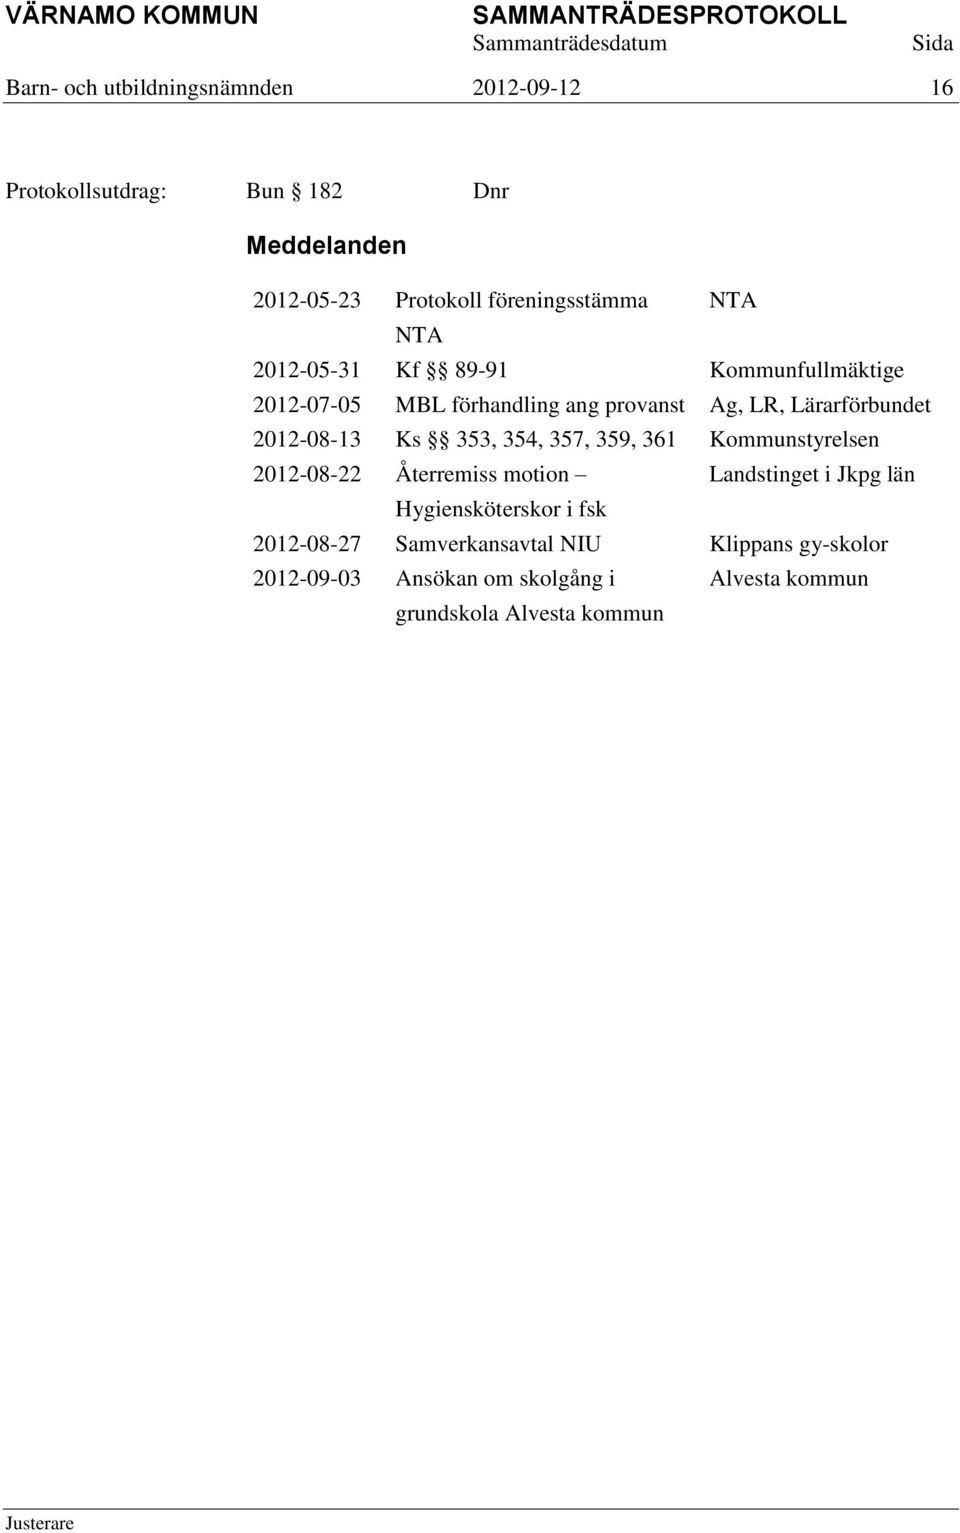 Lärarförbundet 2012-08-13 Ks 353, 354, 357, 359, 361 Kommunstyrelsen 2012-08-22 Återremiss motion Landstinget i Jkpg län